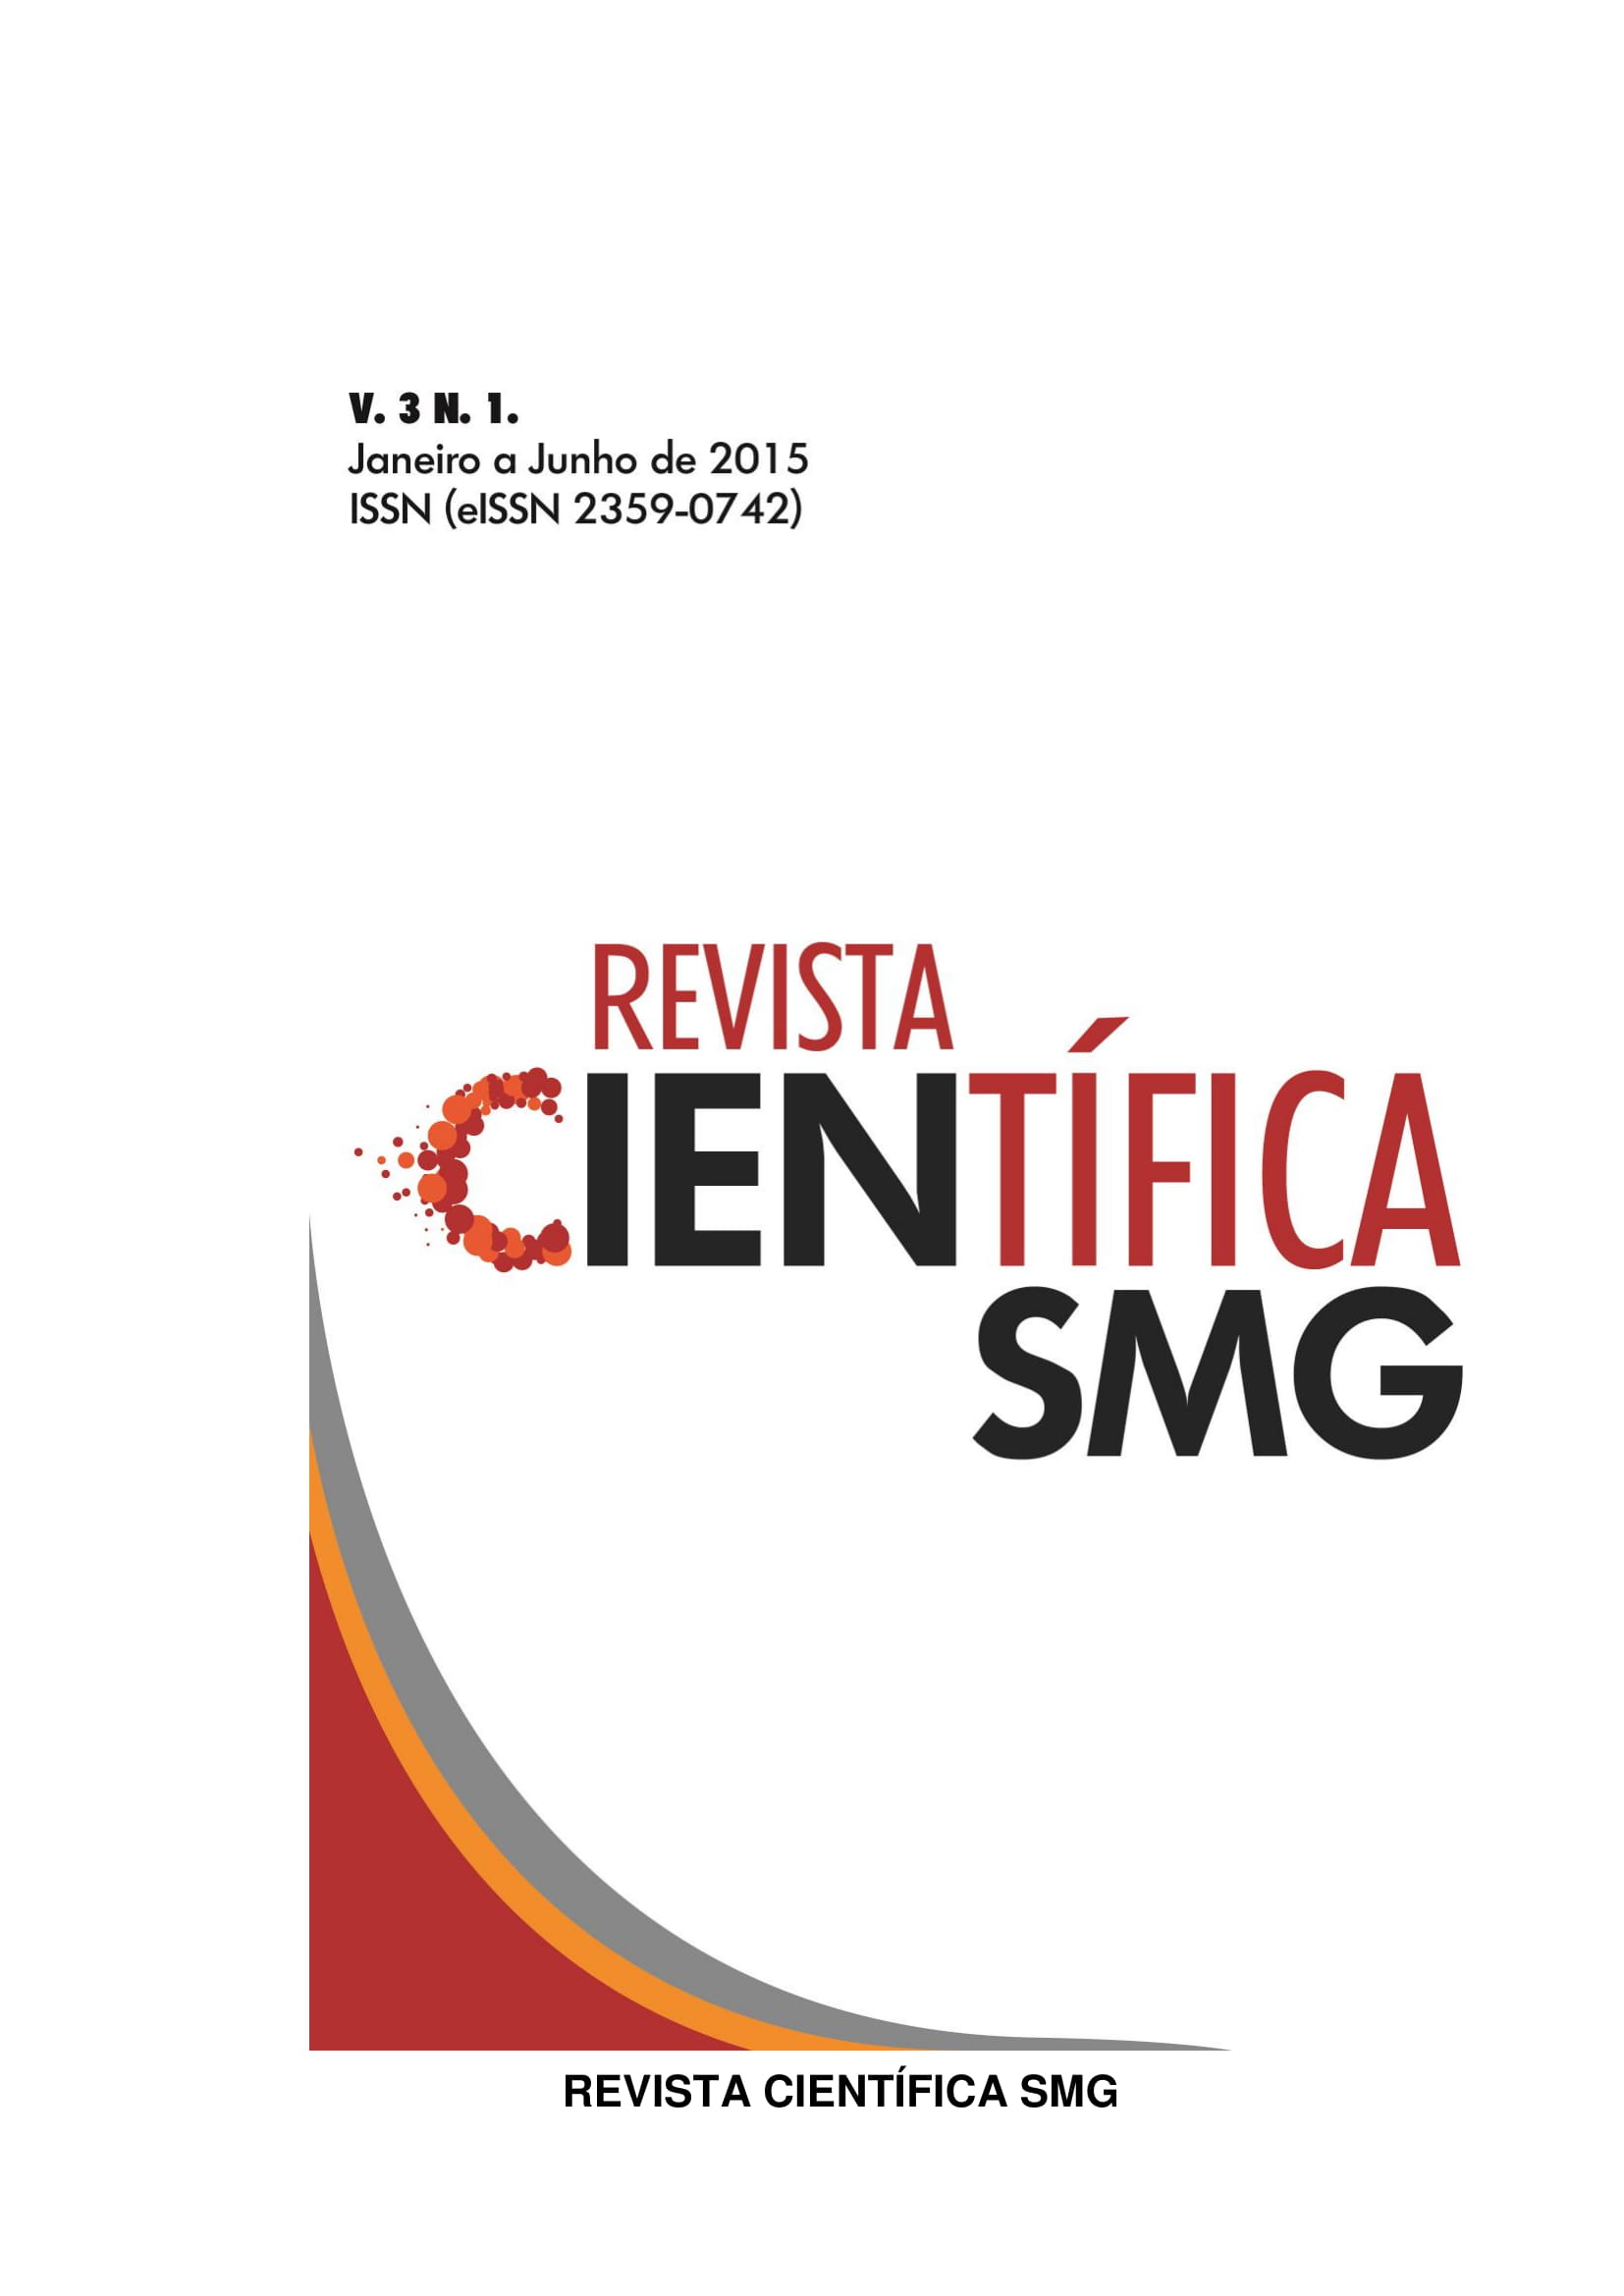 					Visualizar v. 3 n. 1 (2015): REVISTA CIENTÍFICA SMG - JANEIRO A JUNHO 2015
				